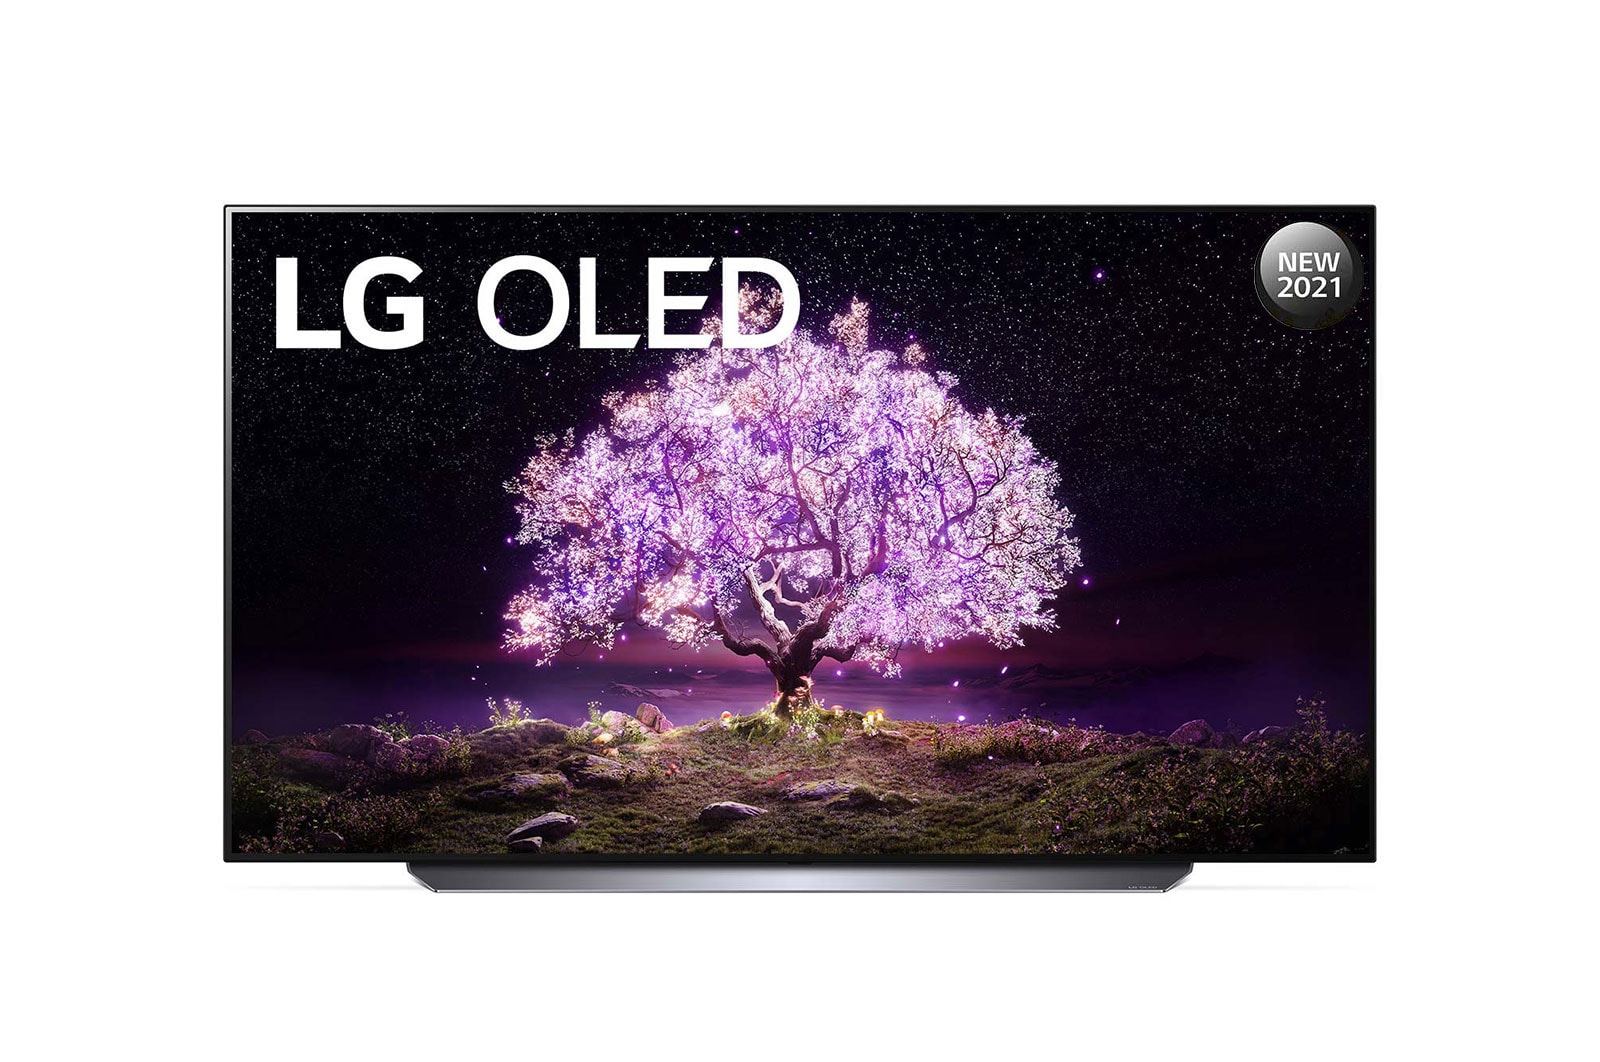 LG 65 inch 4K Cinema Screen OLED TV